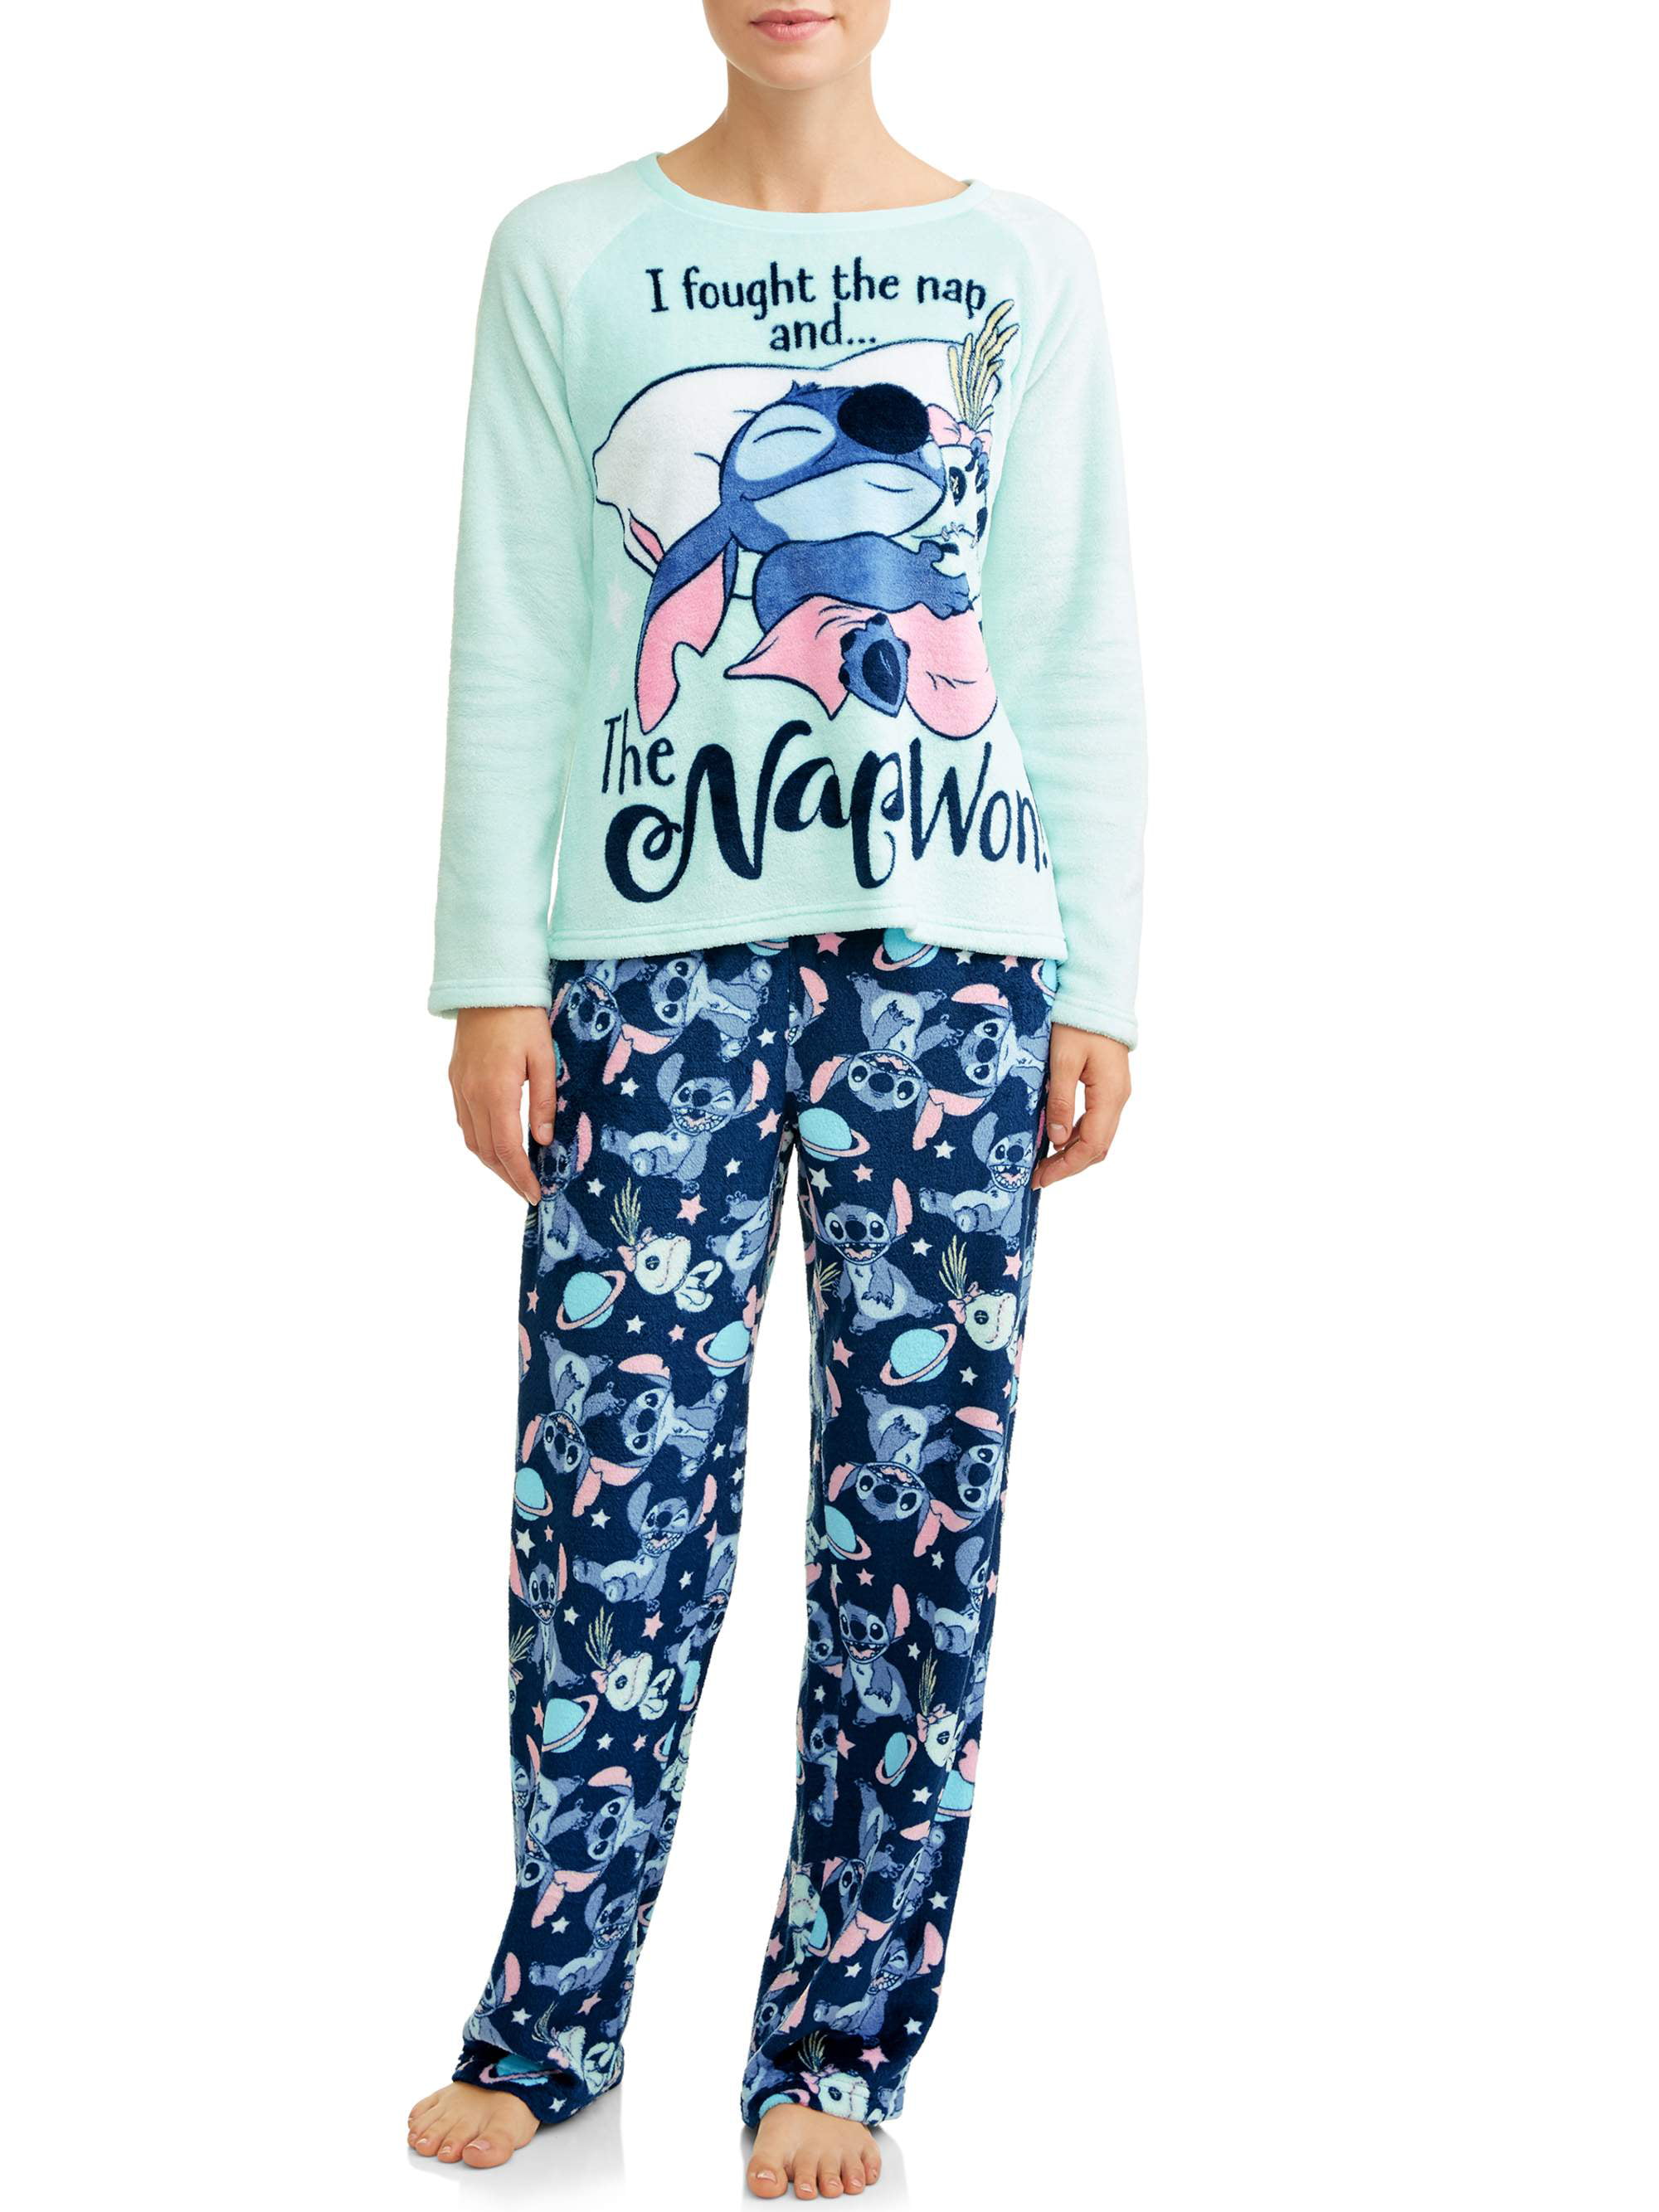 Pyjama long Disney Lilo & Stitch